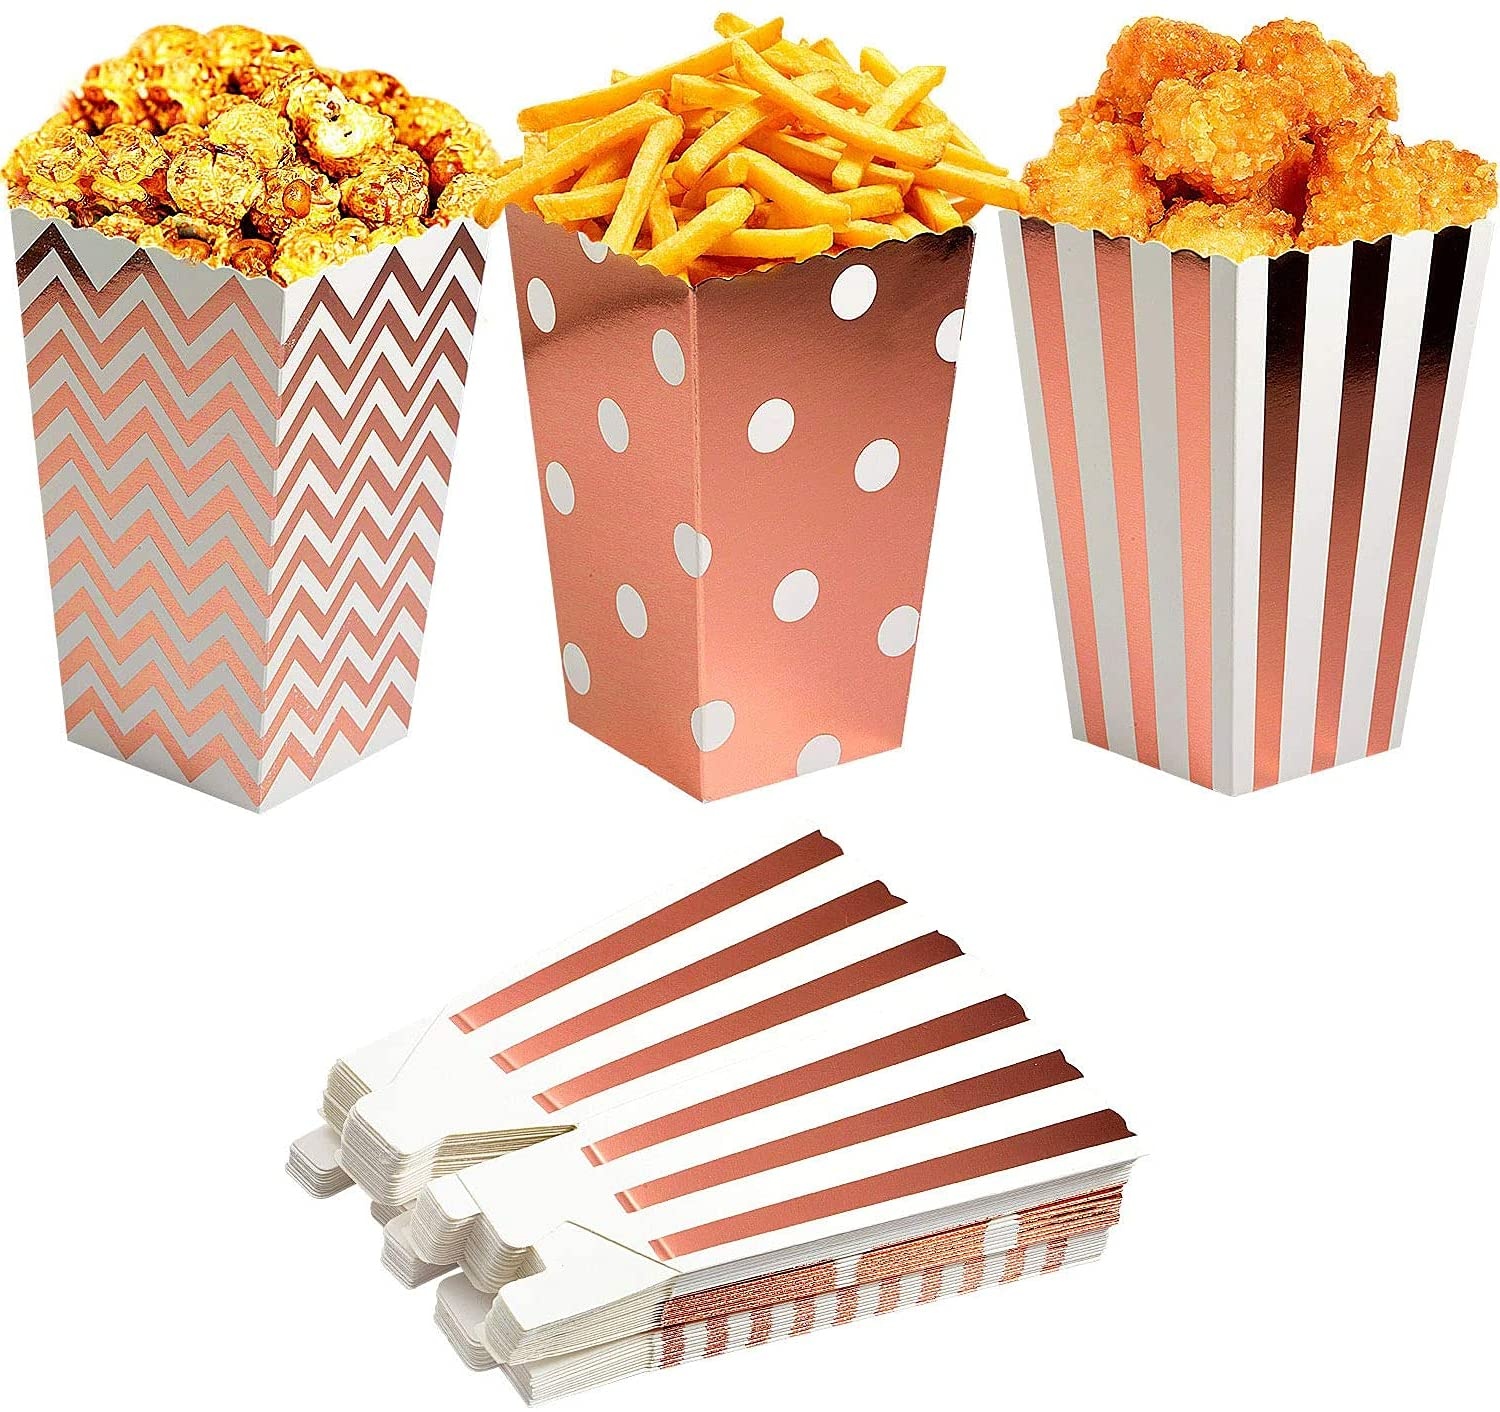 Miss-shop Popcorn Boxen,Popcorn Tüten Pappe 36 Stück Popcorn Candy Boxen Behälter für Party Snacks, Süßigkeiten, Popcorn und Geschenke - Rosé Gold 12 * 7 cm